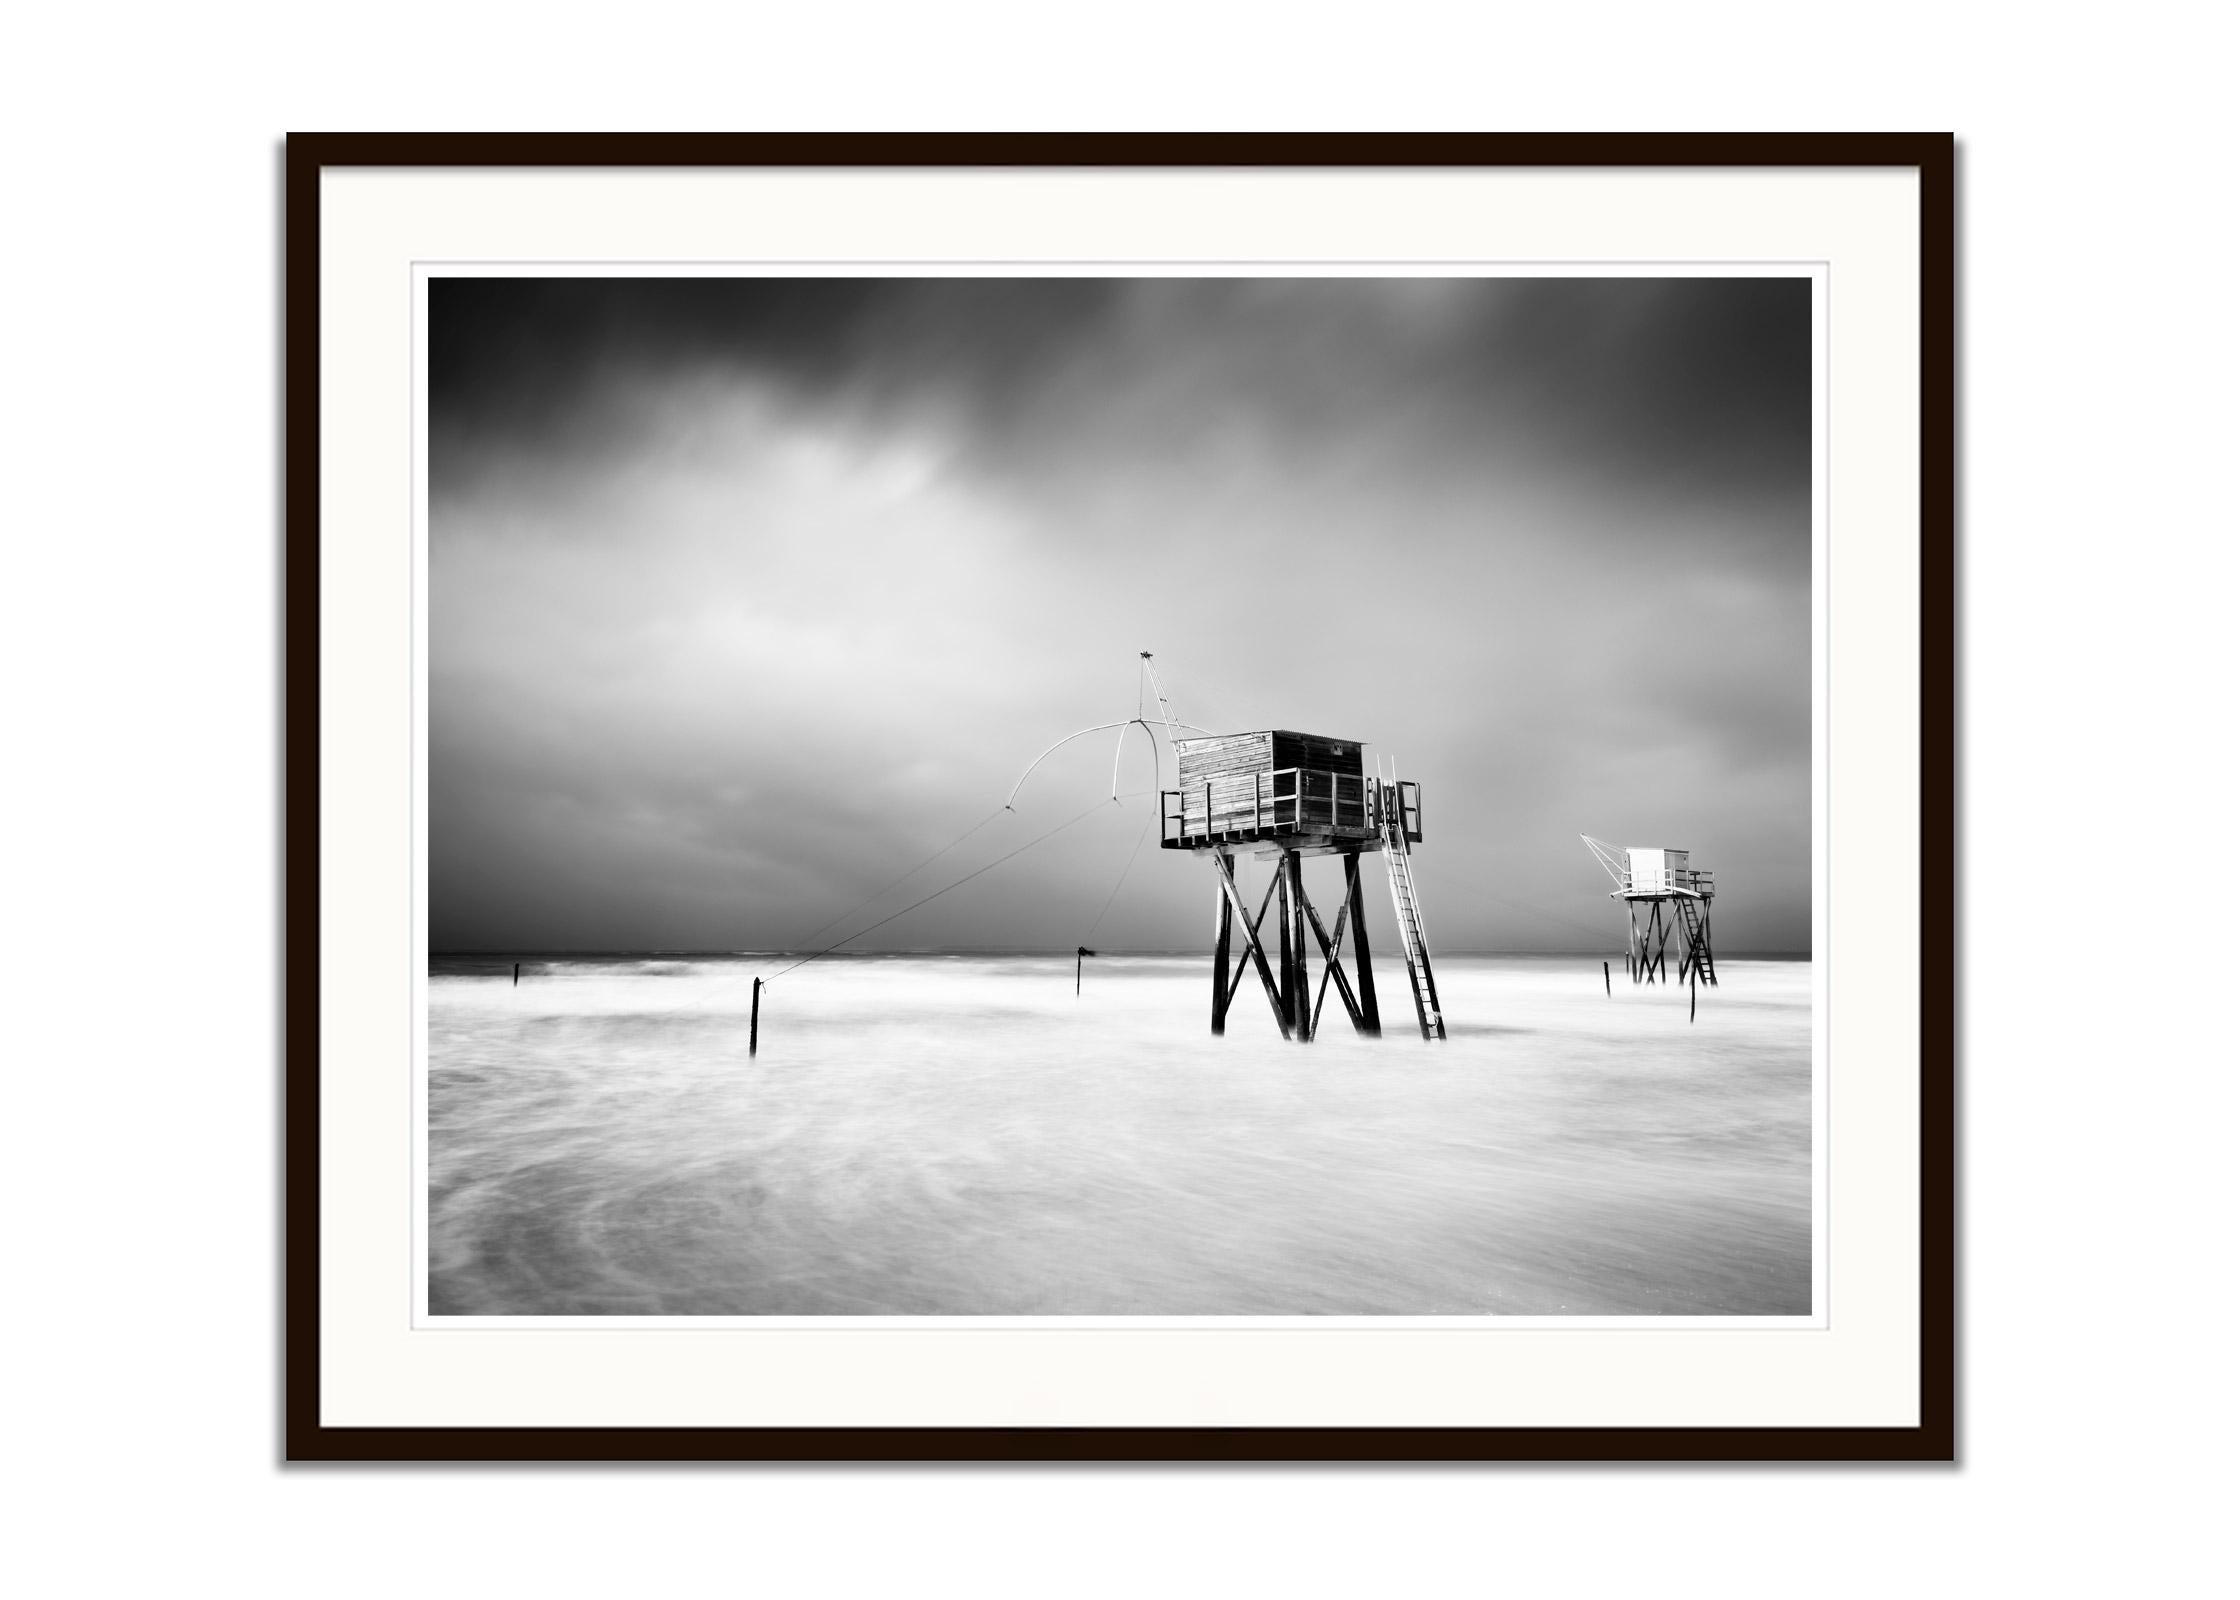 Fishing Hut On Stilts, Surf, Küste, Sturm, Schwarz-Weiß-Landschaftsfotografie (Grau), Black and White Photograph, von Gerald Berghammer